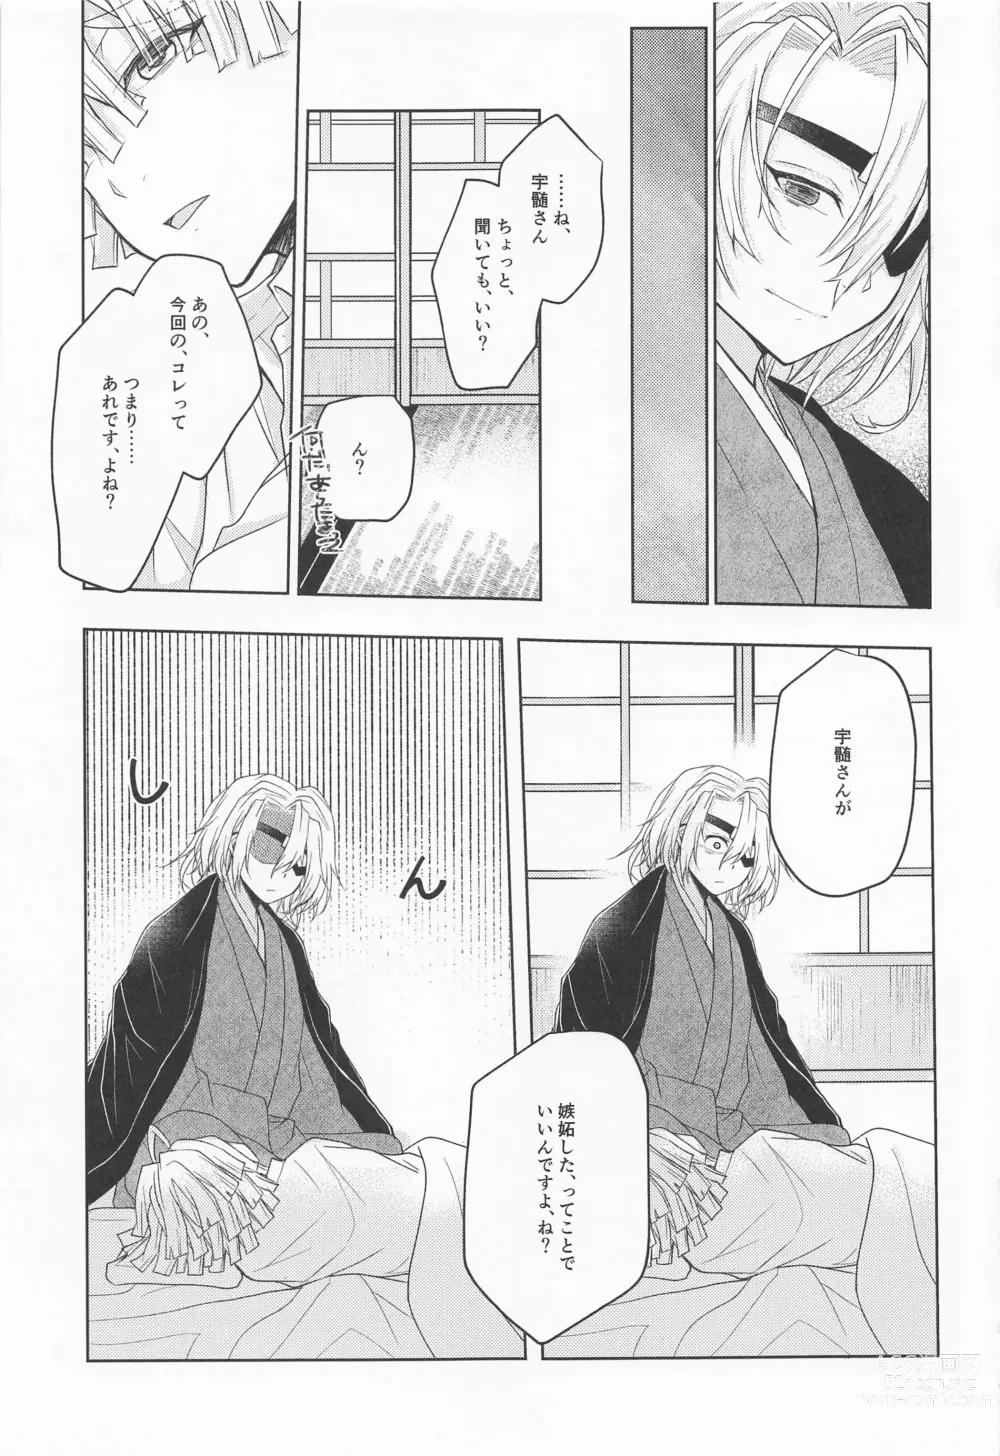 Page 40 of doujinshi Ai Mite no